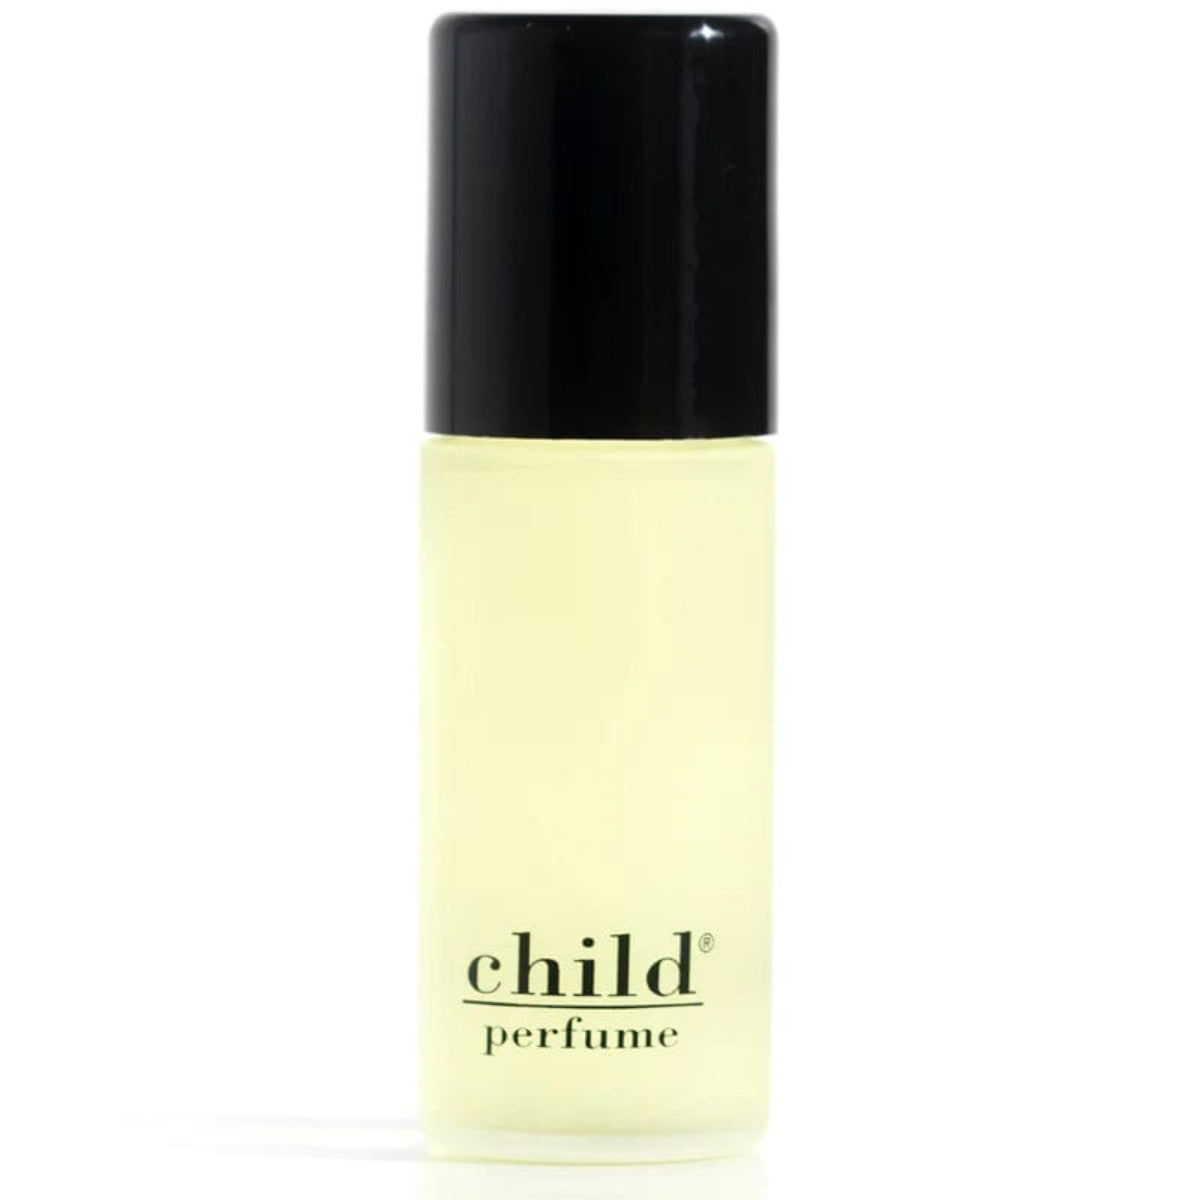 Child Perfume - Perfume Oil Roll On - Perfume - DANSKmadeforrooms